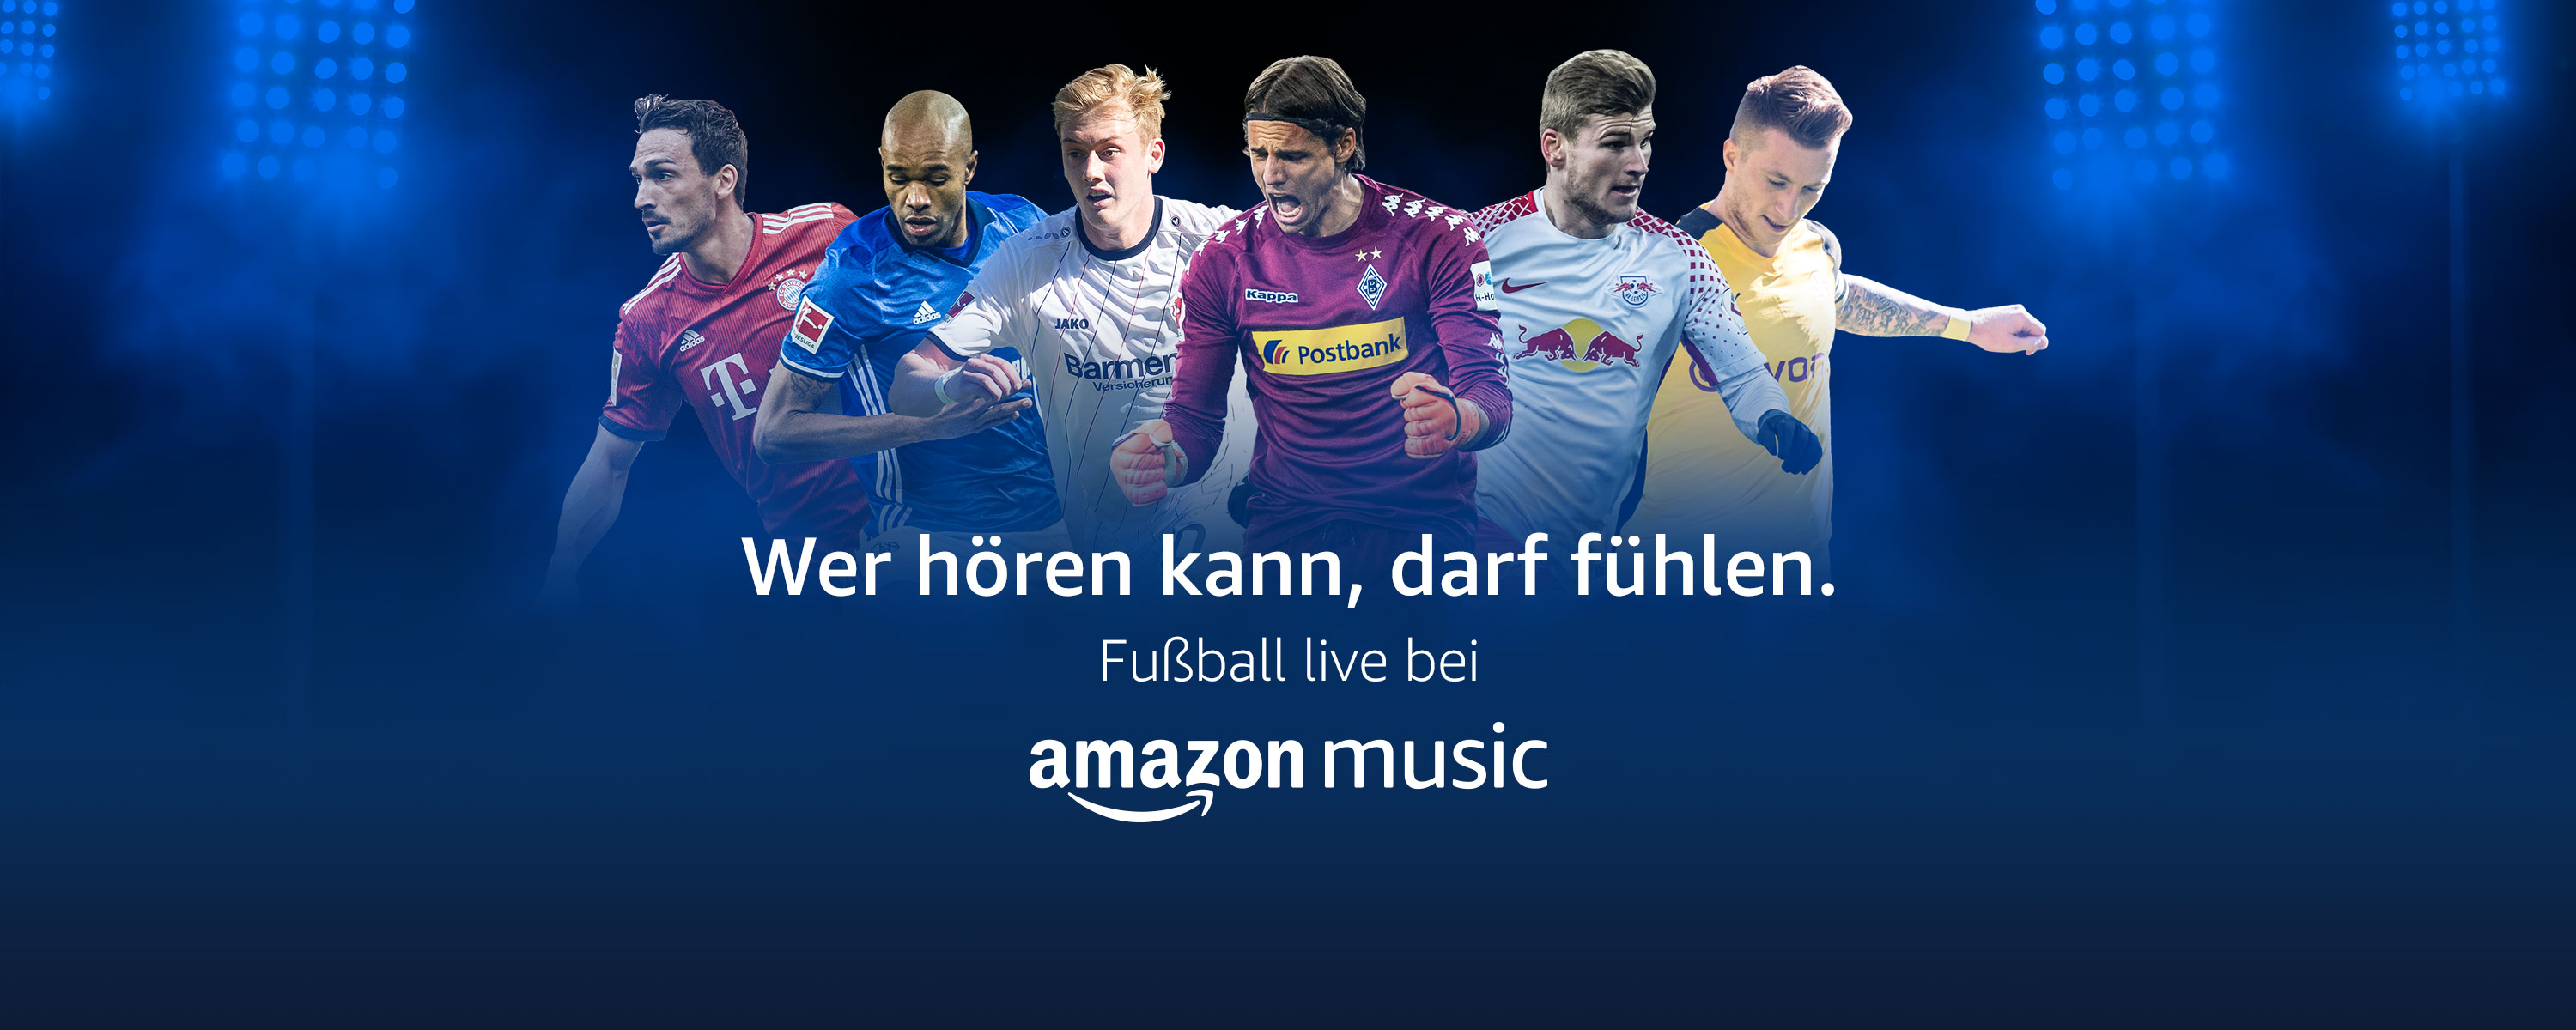 Zum Saisonstart 2018/ 2019 Audio-Inhalte der Bundesliga, UEFA Champions League und des DFB-Pokals für Amazon Prime-Mitglieder ohne Zusatzkosten!